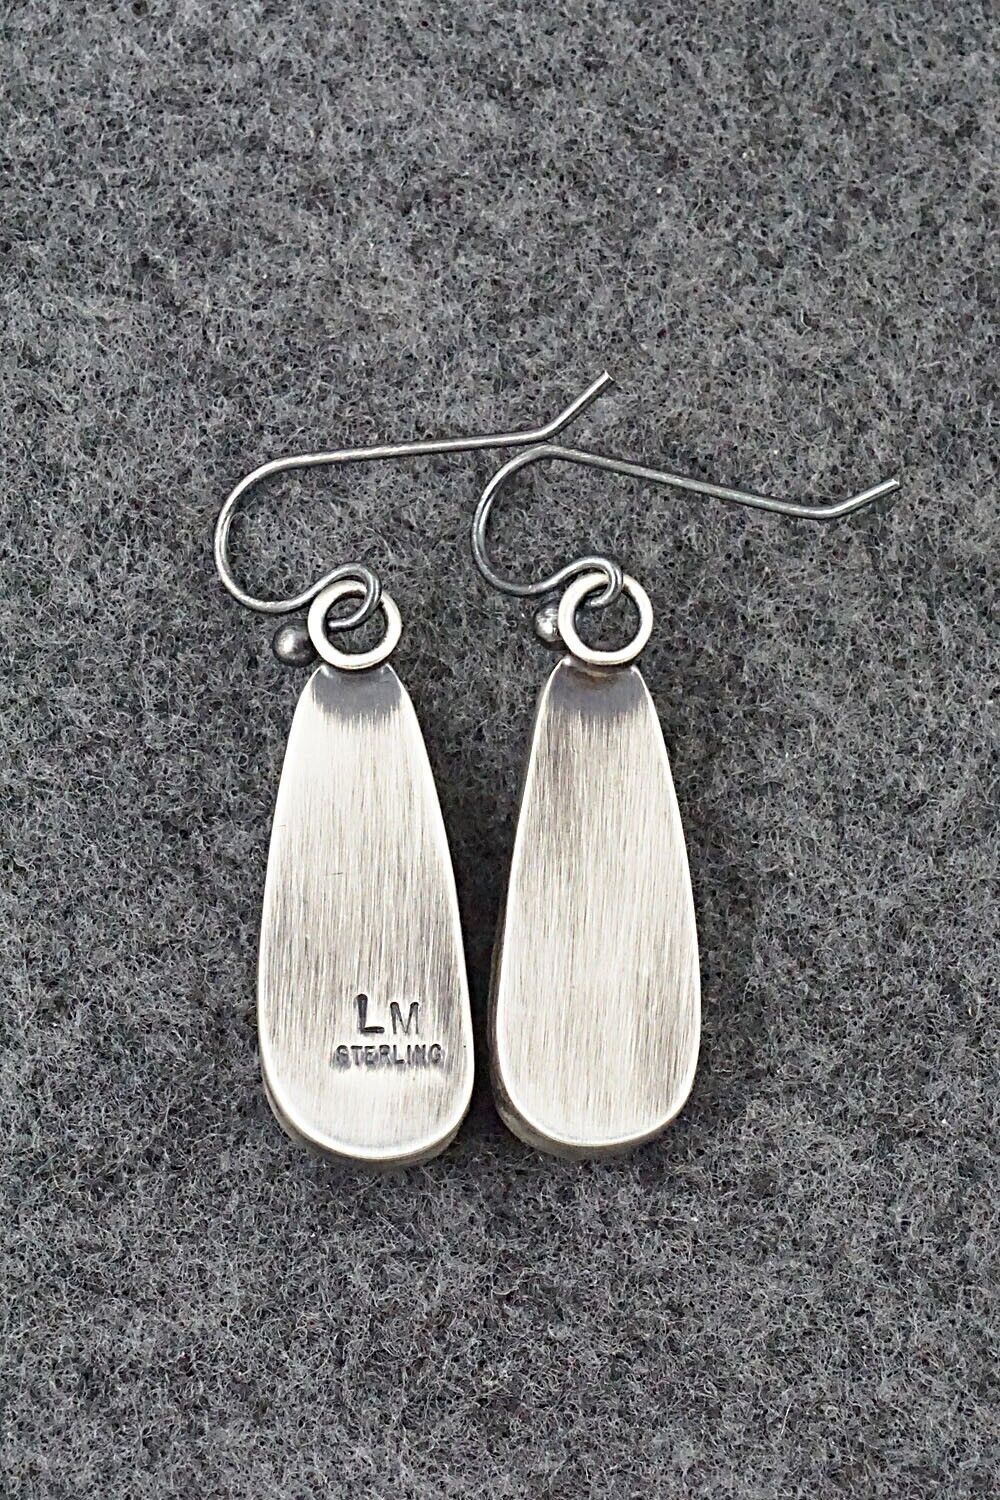 White Buffalo & Sterling Silver Earrings - Lyod Martinez